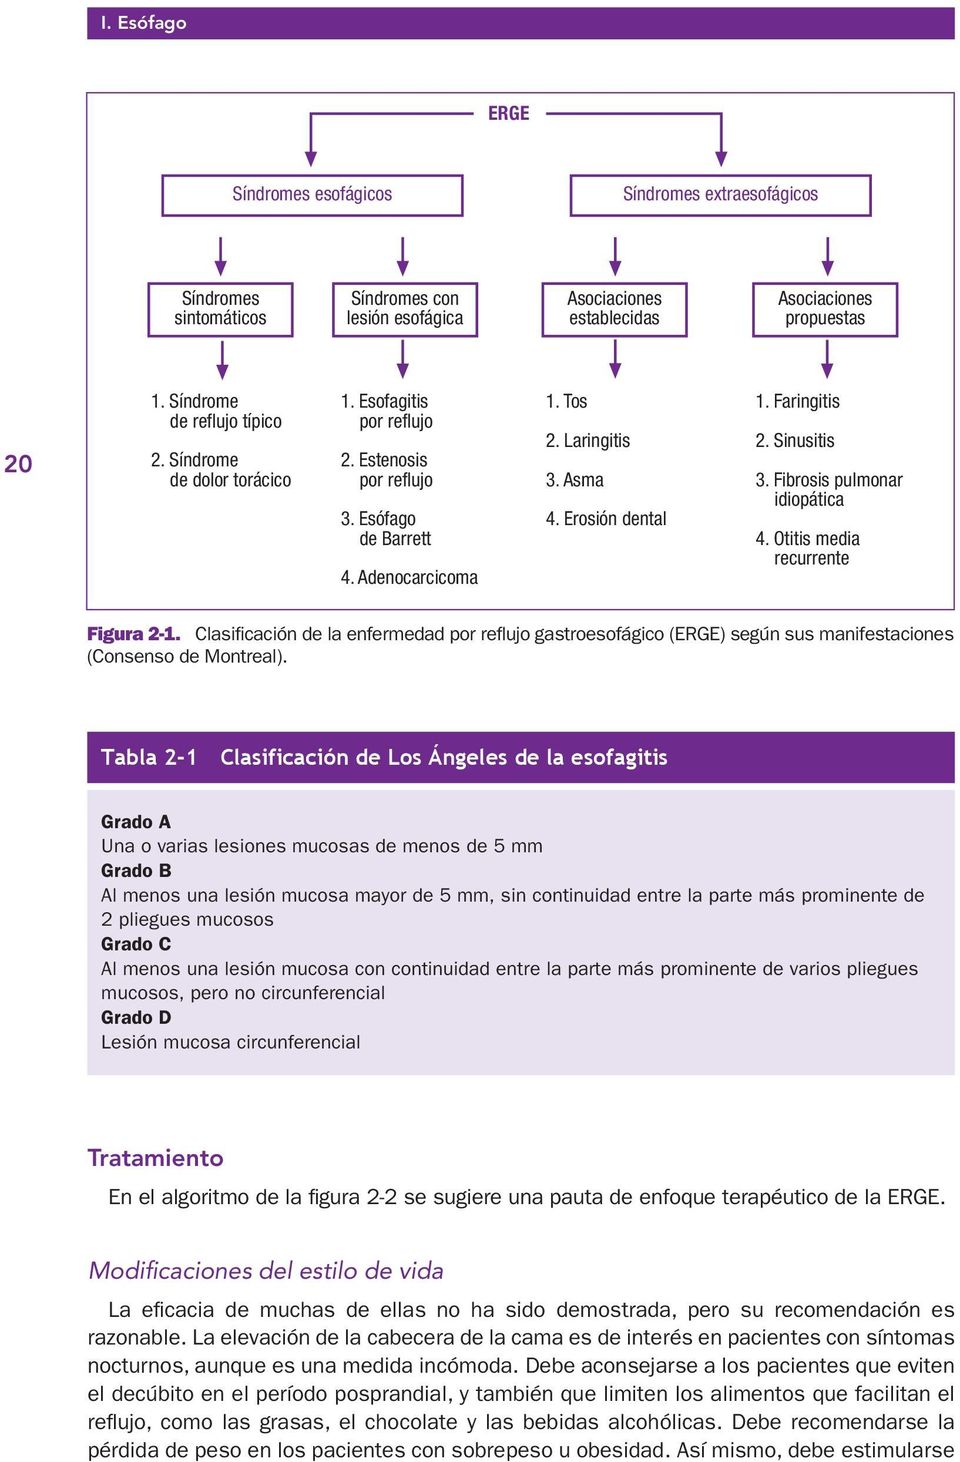 Fibrosis pulmonar idiopática 4. Otitis media recurrente Figura 2-1. Clasificación de la enfermedad por reflujo gastroesofágico (ERGE) según sus manifestaciones (Consenso de Montreal).